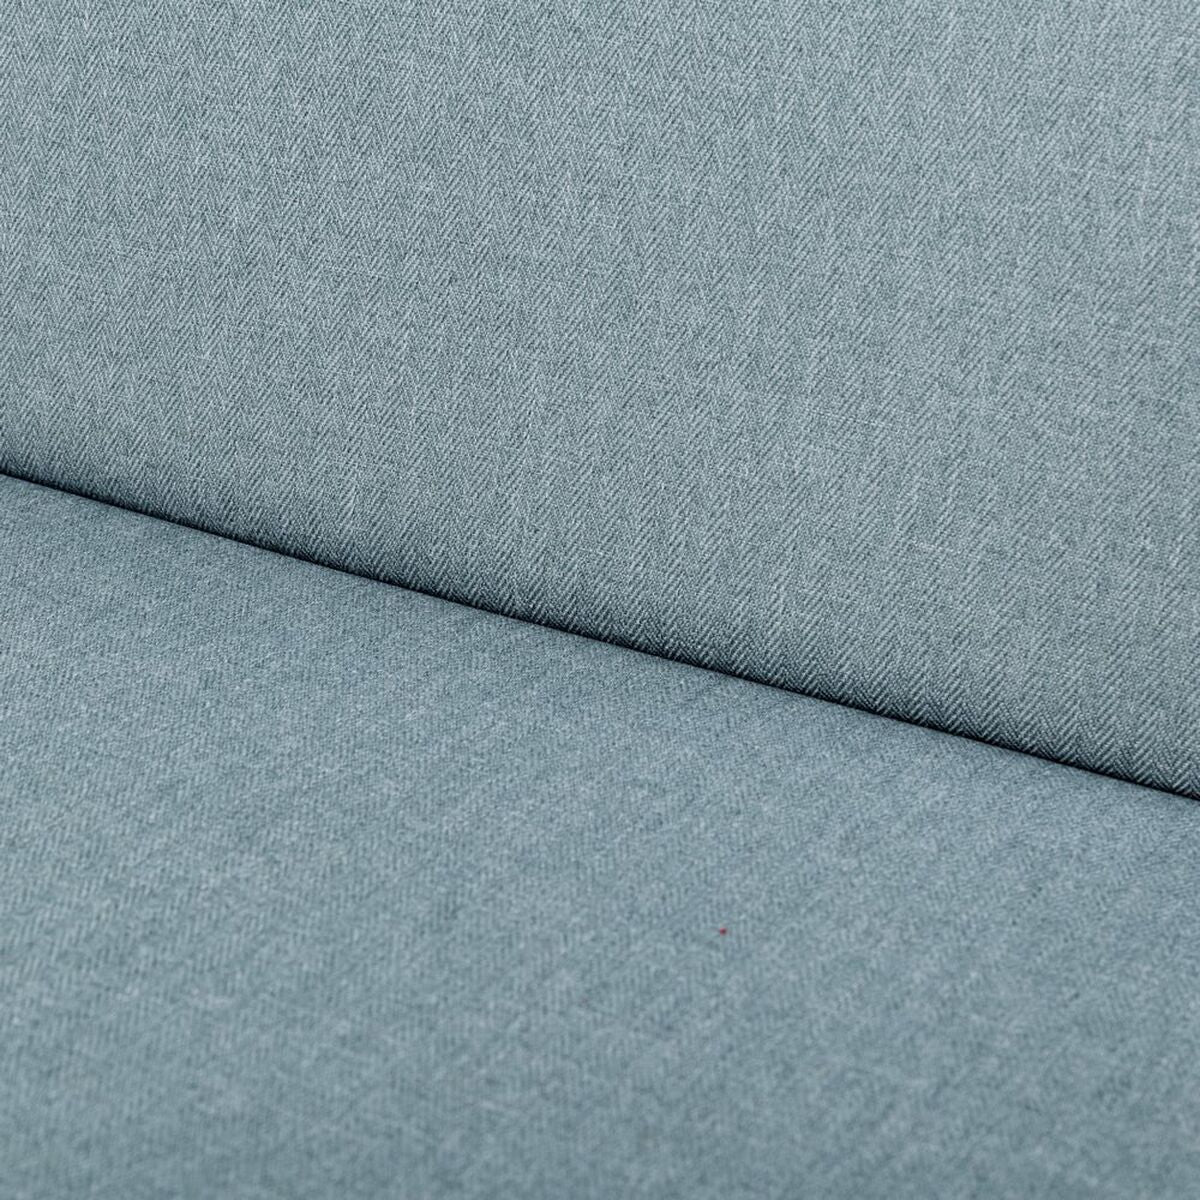 Chair cushion Blue 123 x 48 x 4 cm